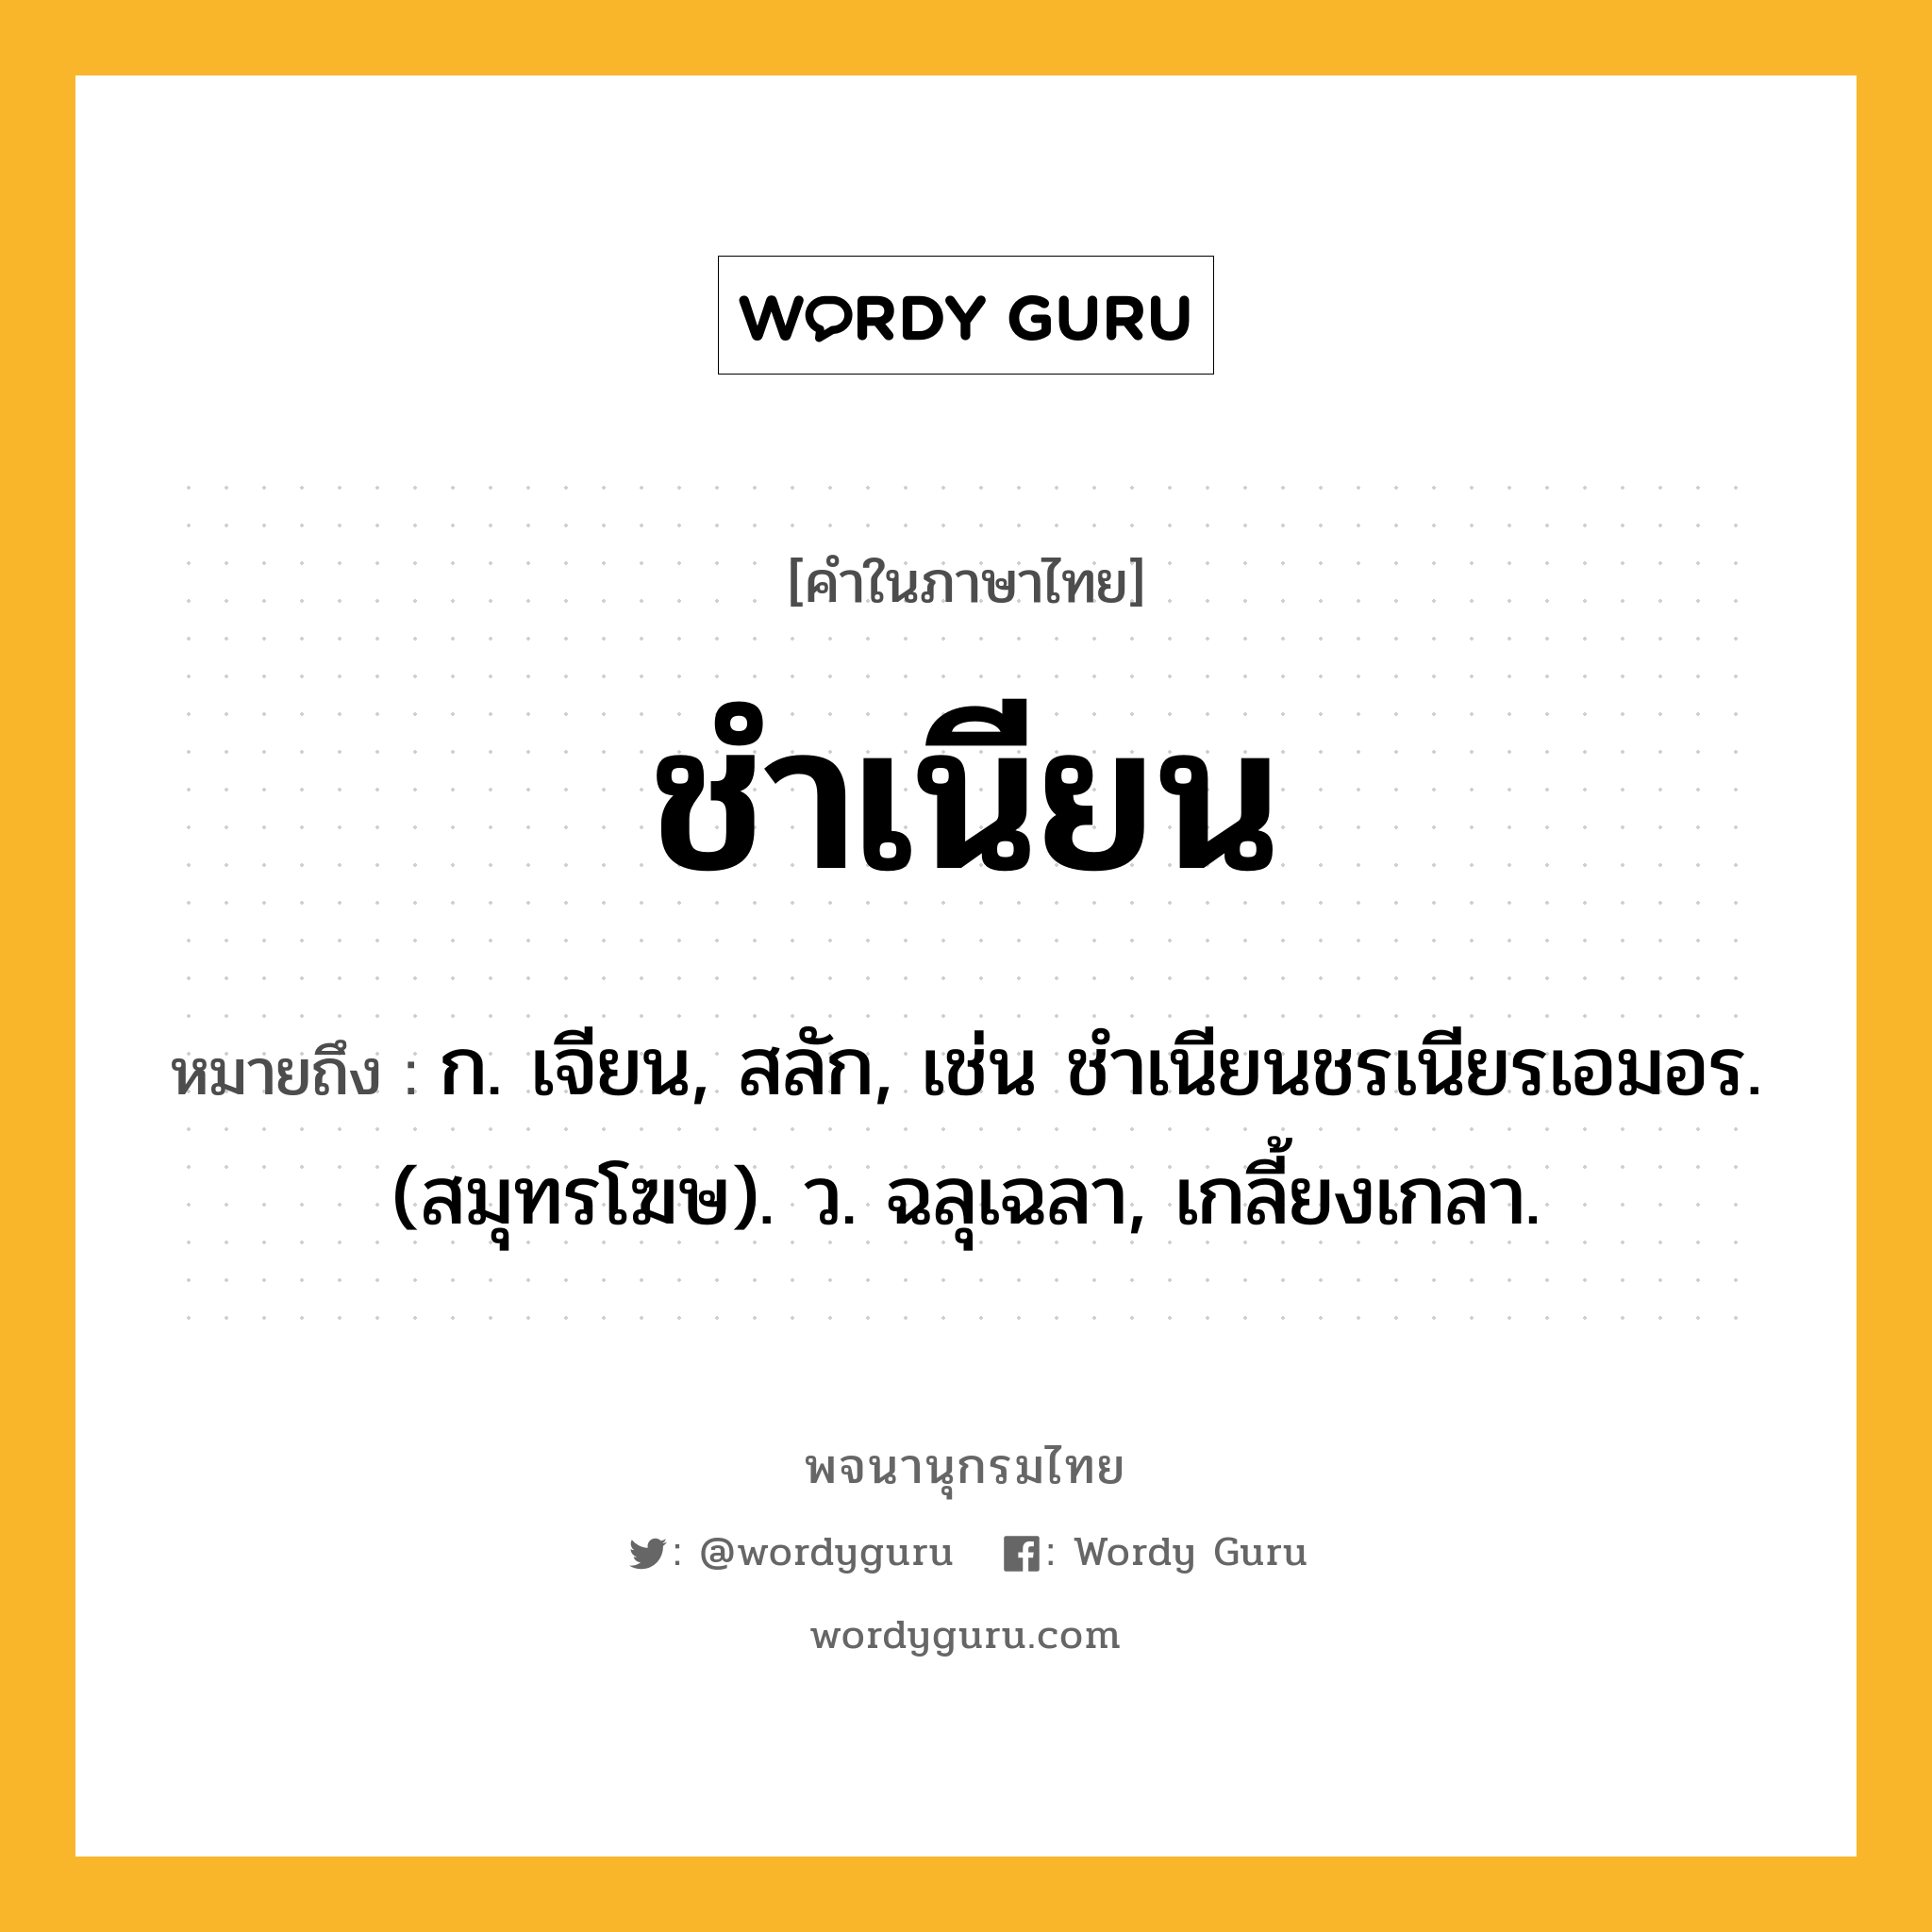 ชำเนียน ความหมาย หมายถึงอะไร?, คำในภาษาไทย ชำเนียน หมายถึง ก. เจียน, สลัก, เช่น ชําเนียนชรเนียรเอมอร. (สมุทรโฆษ). ว. ฉลุเฉลา, เกลี้ยงเกลา.